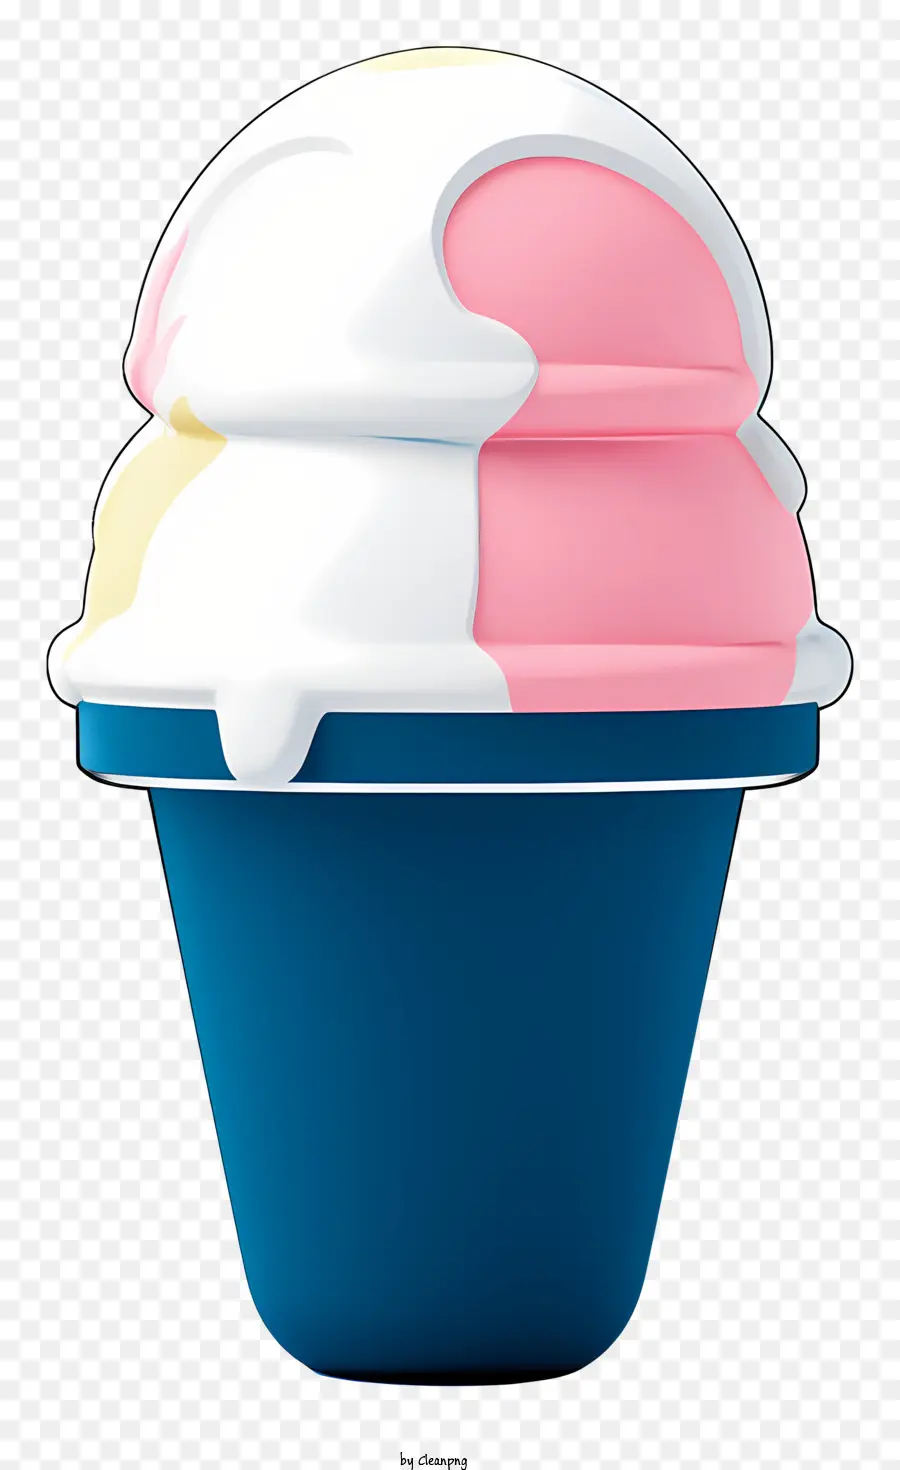 Ice Cream hình nón màu xanh nhựa trắng và màu hồng xoáy màu đen chứa đầy kem - Kem hình nón bằng nhựa màu xanh với thiết kế xoáy